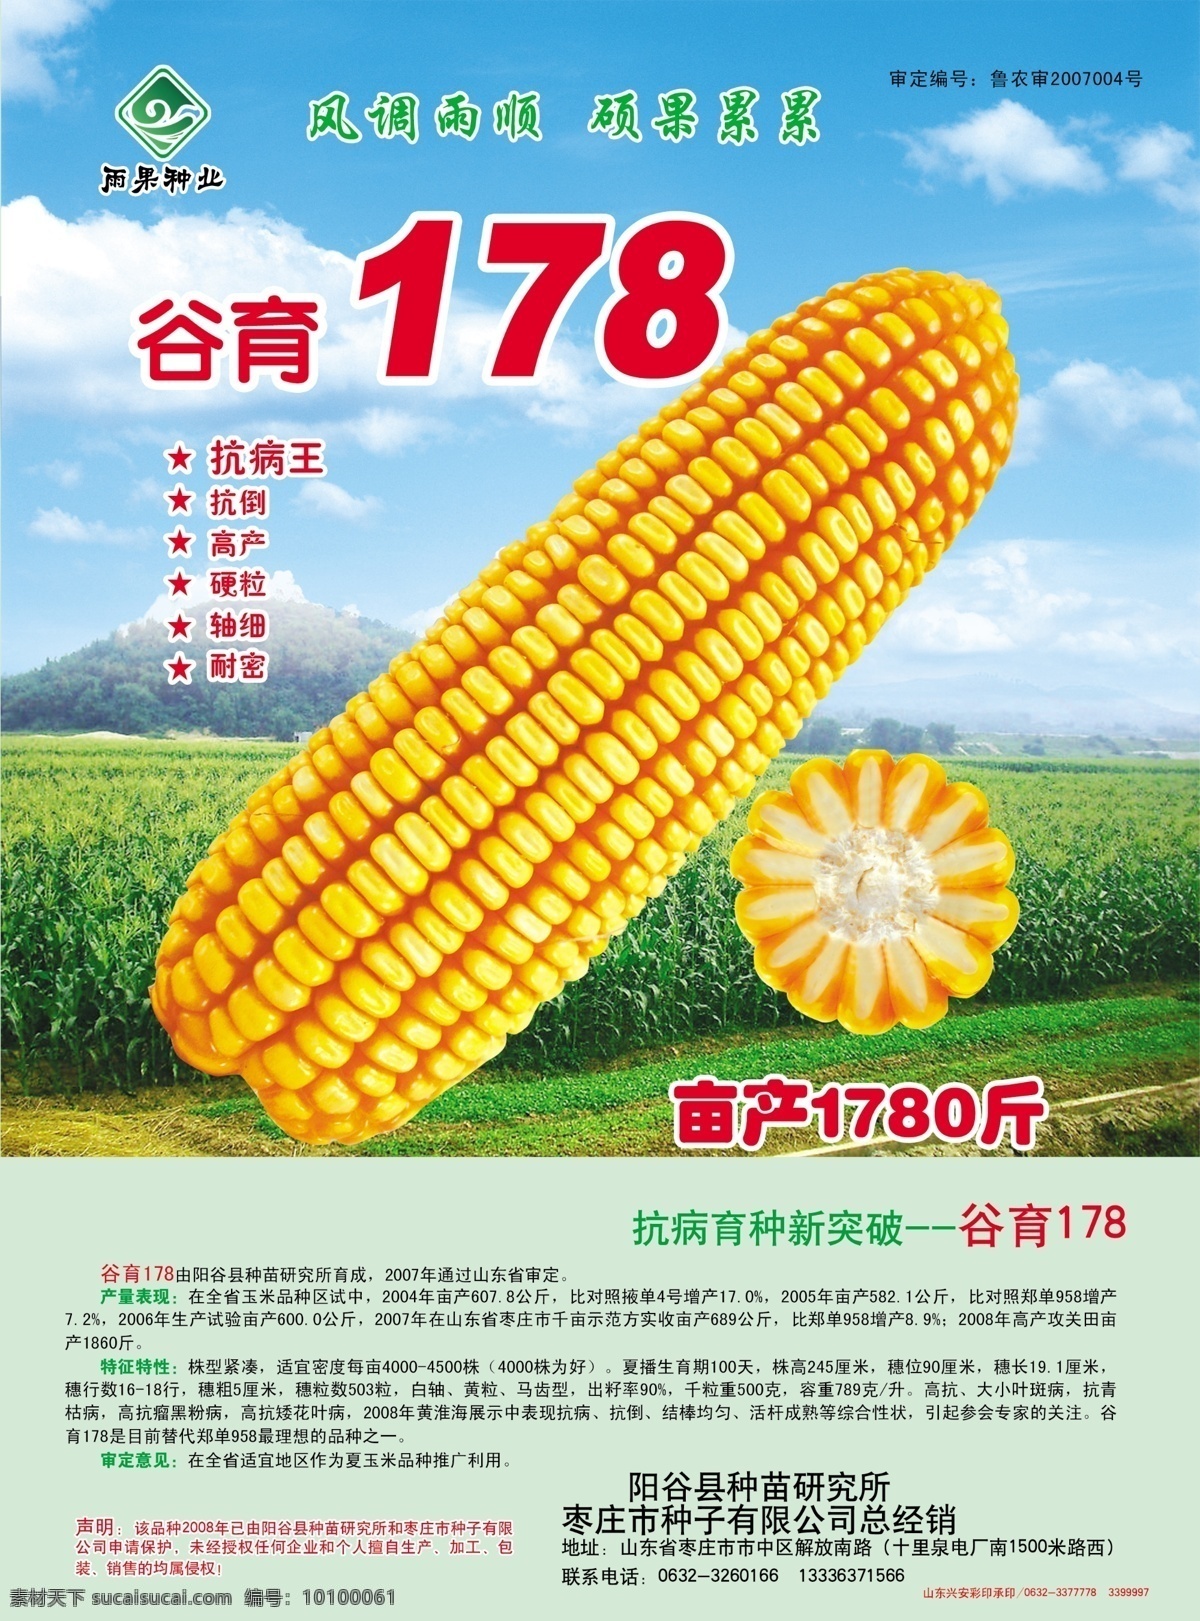 玉米种子单页 玉米种子 单页 雨果种植 种苗研究所 白 轴 黄 粒 马 齿 型 dm宣传单 广告设计模板 源文件